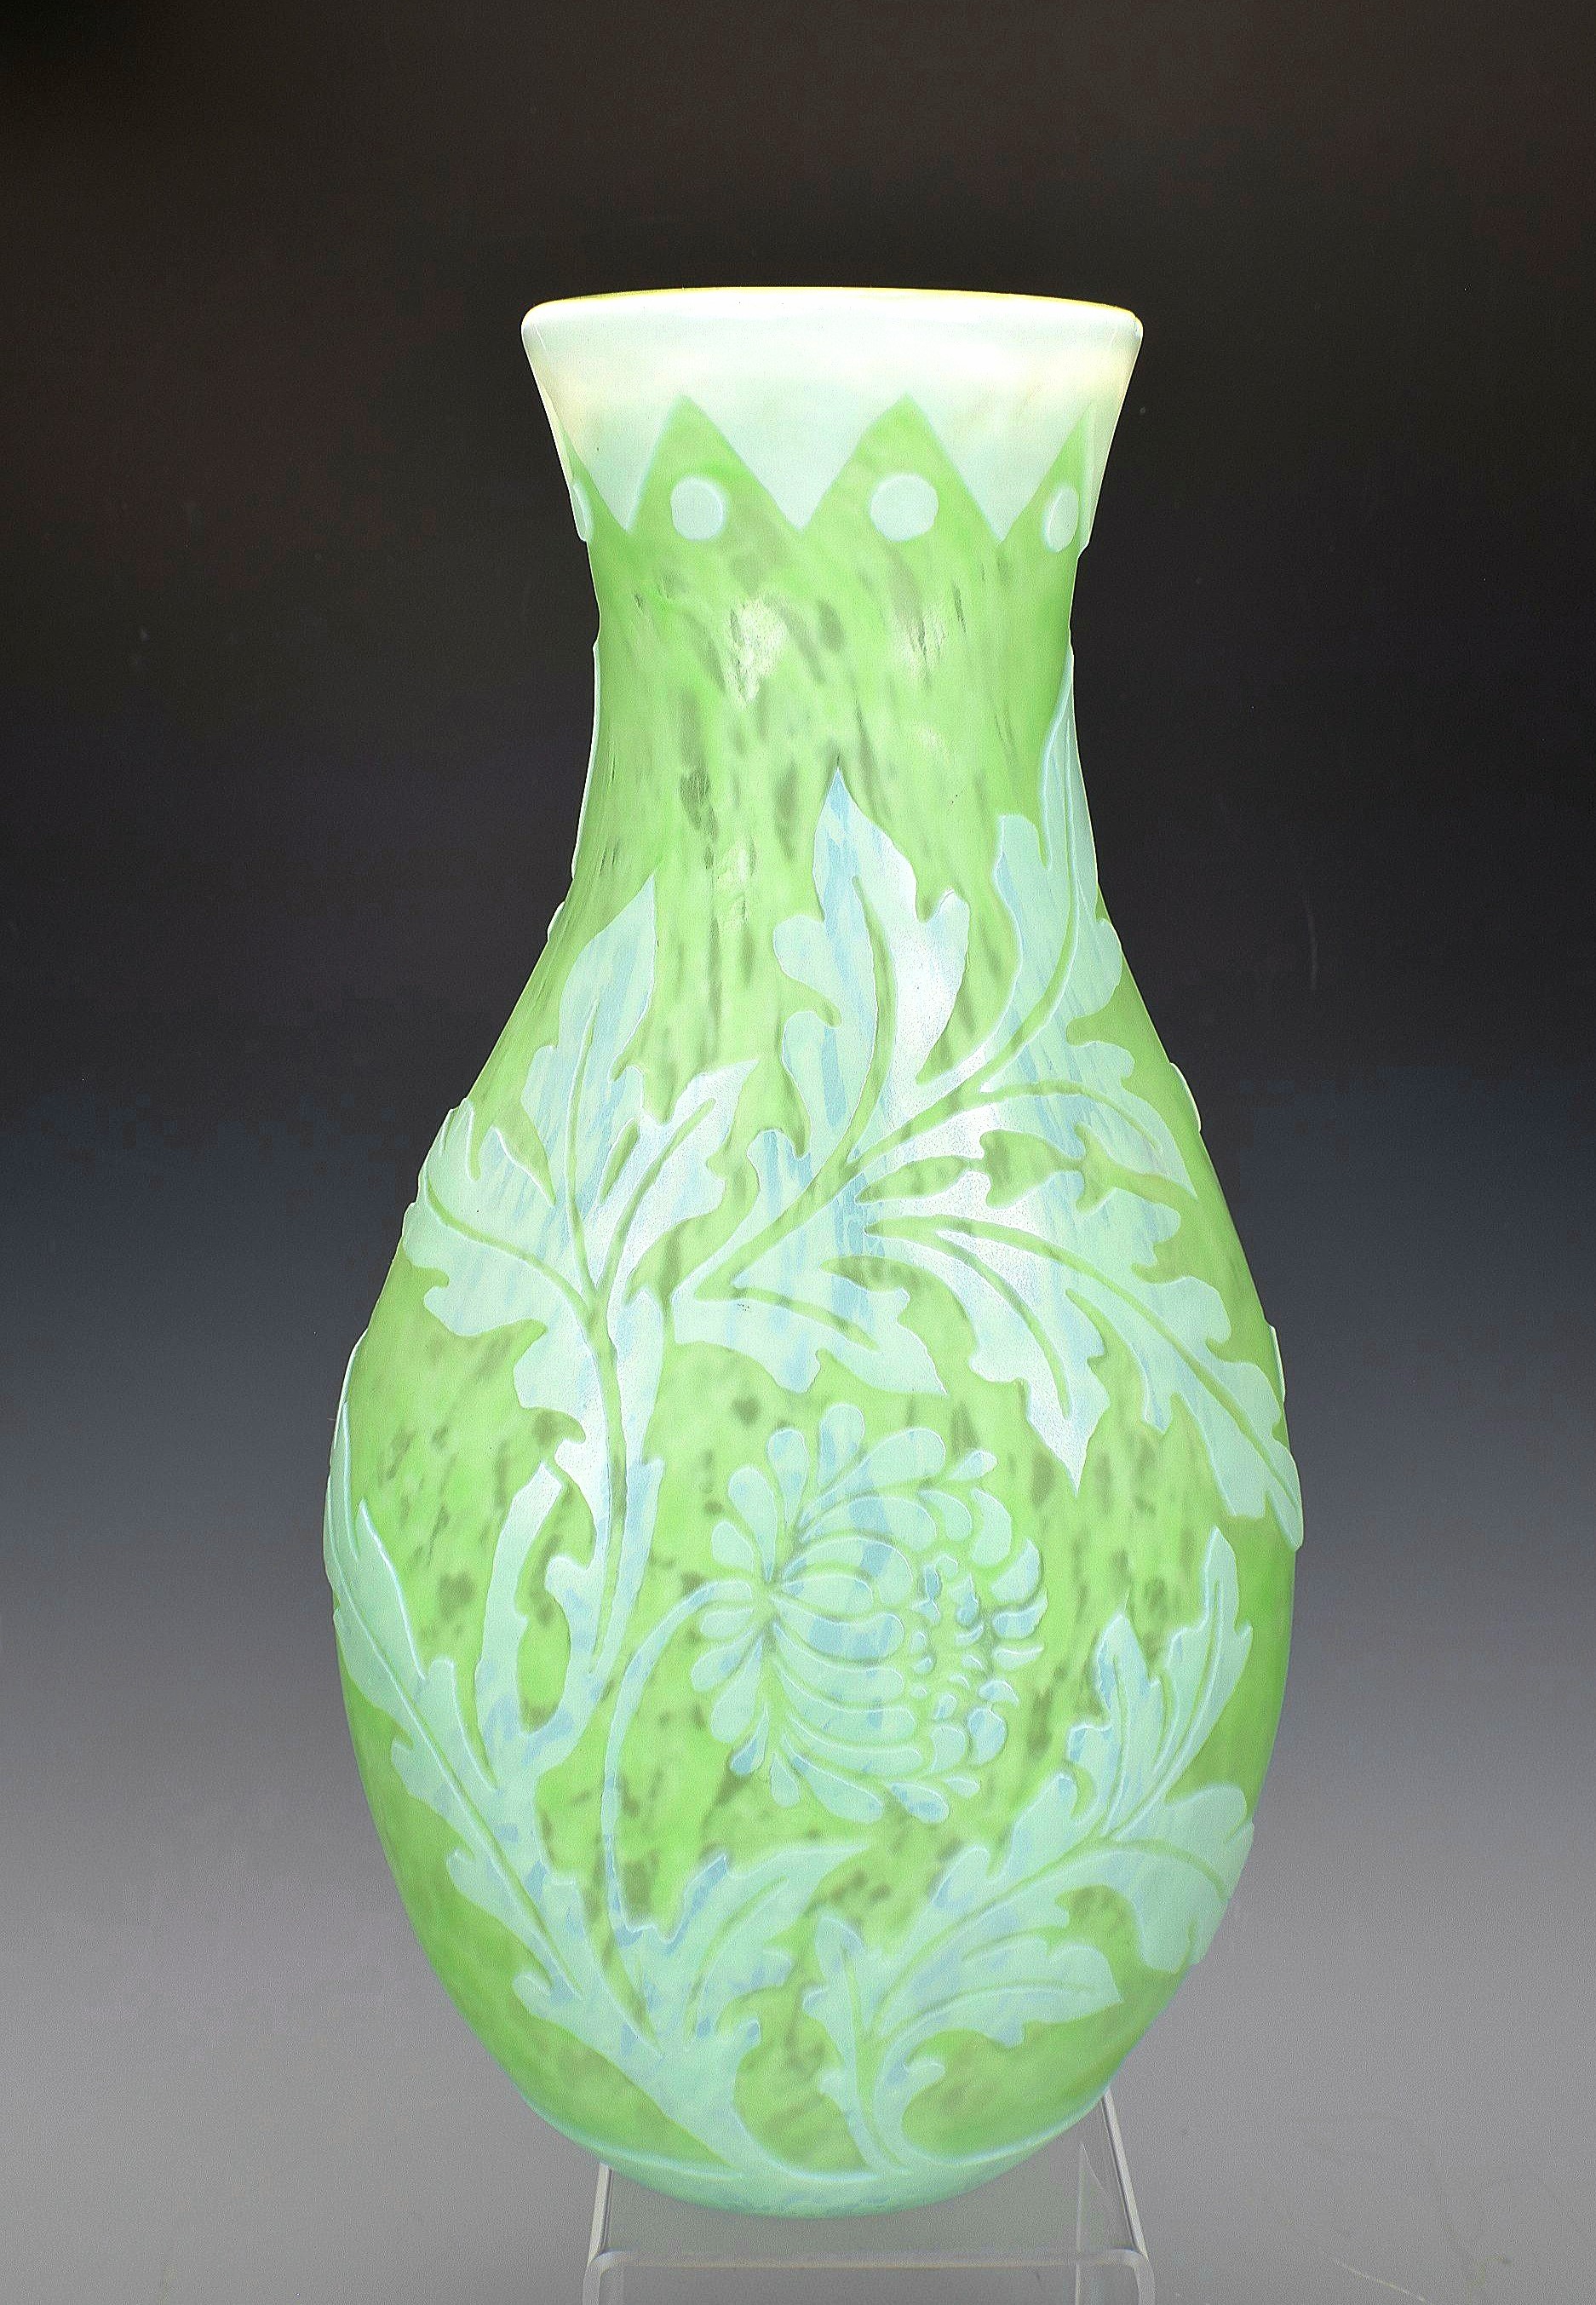 6589 - Acid Etched Vase